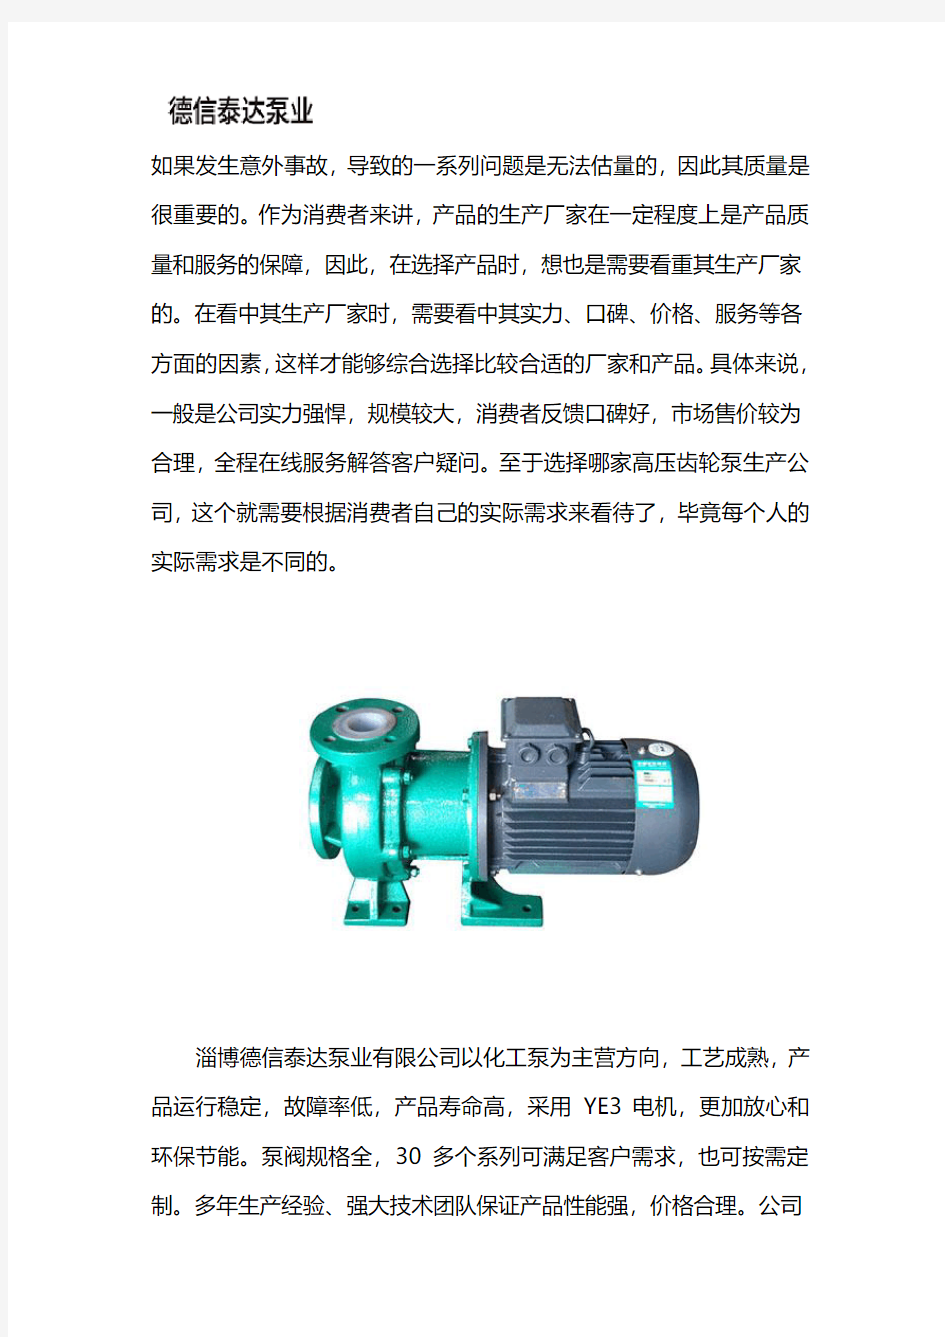 FP(Z)增强聚丙烯泵公司